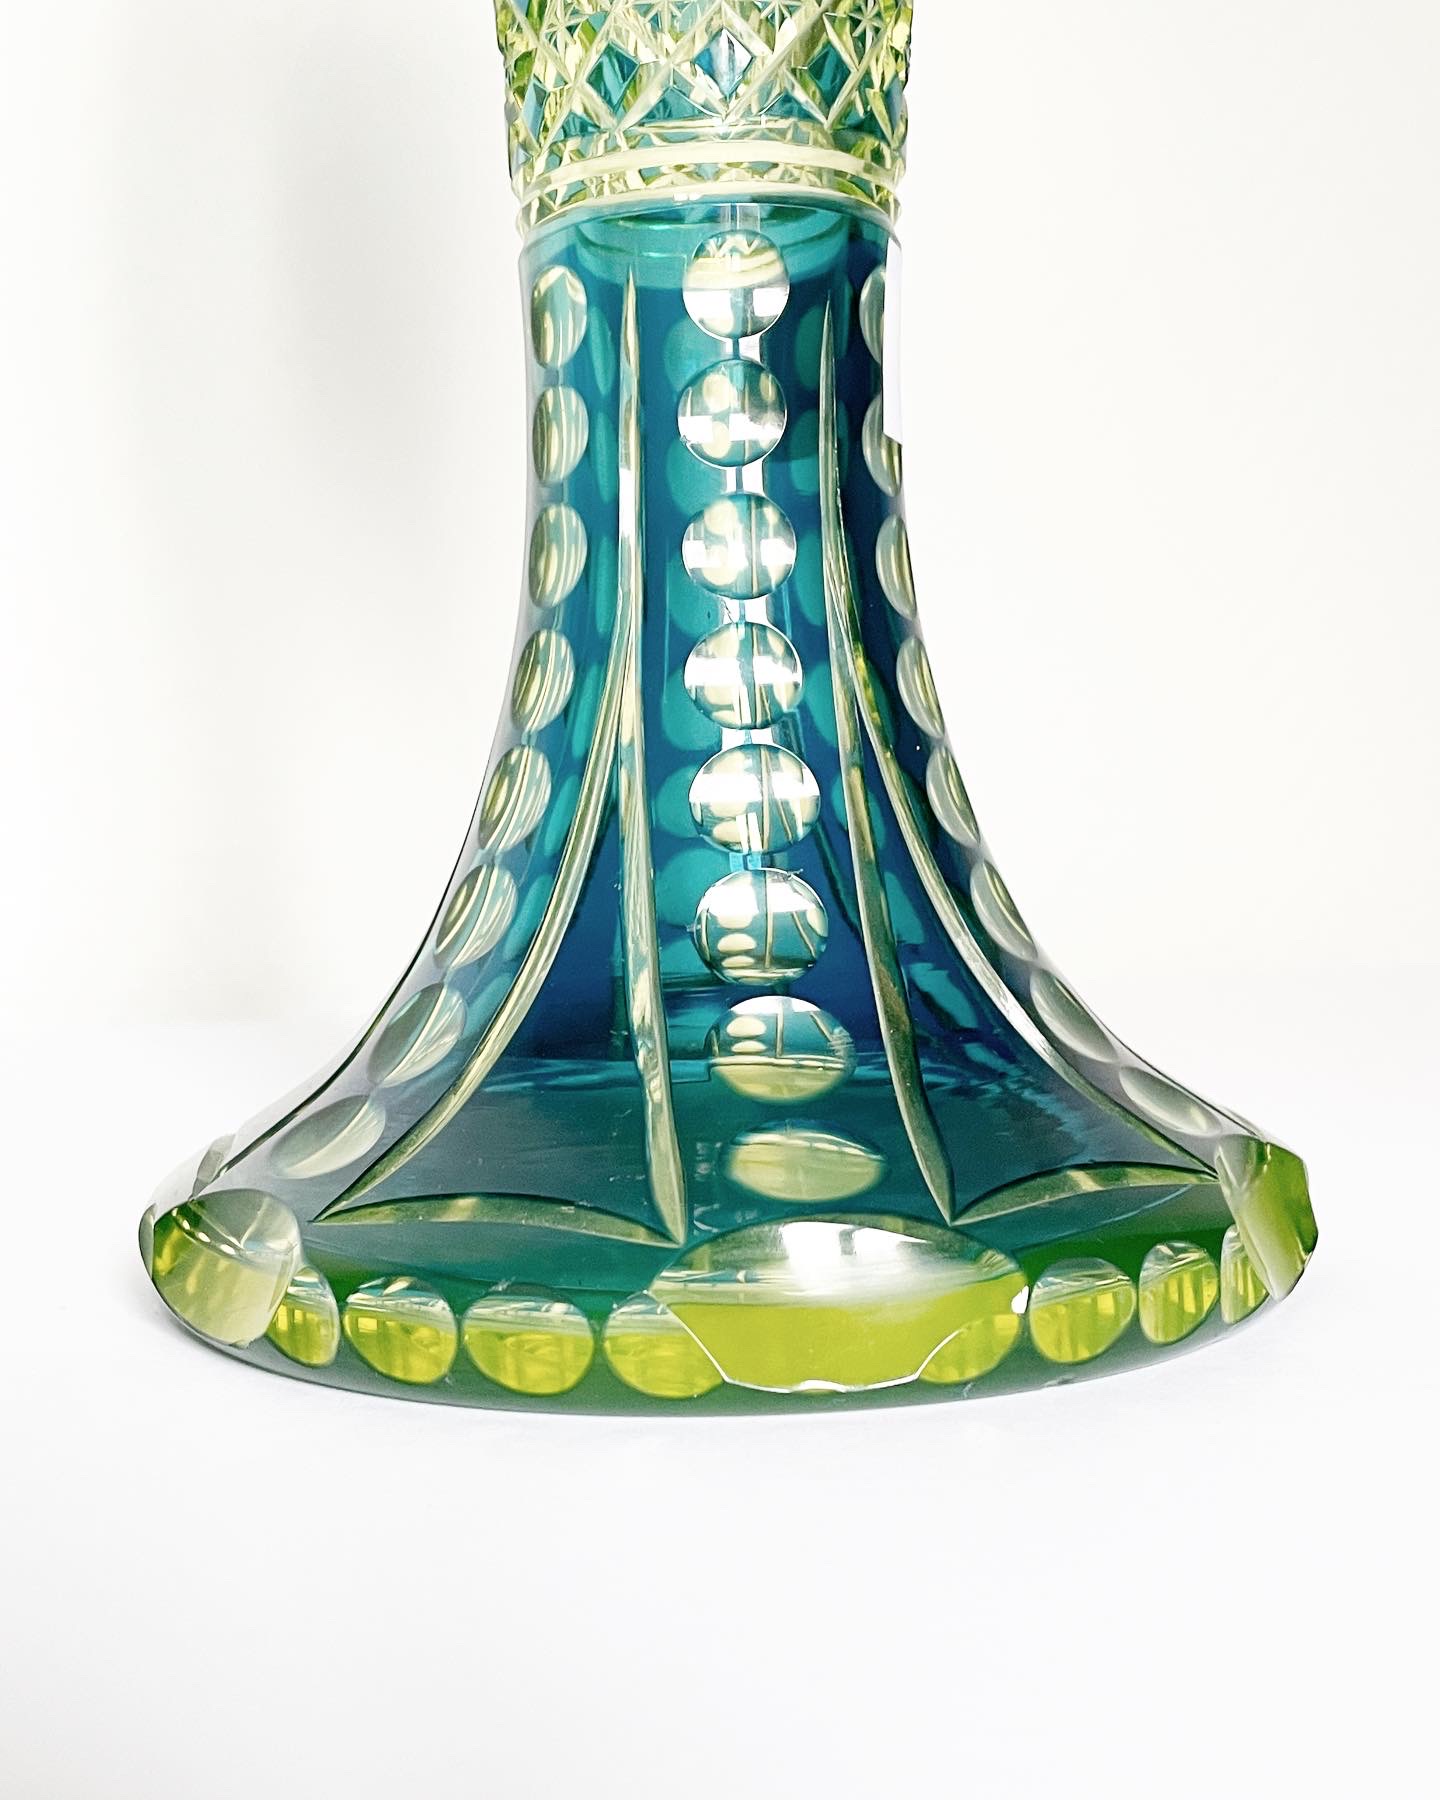 vase-jonghen-val-saint-lambert-urane-bleu-pétrole-art-nouveau-collection-cristal-léon-ledru-dégagé-acide-aurore-morisse-antiquaire-marchand-art-liège-paris1